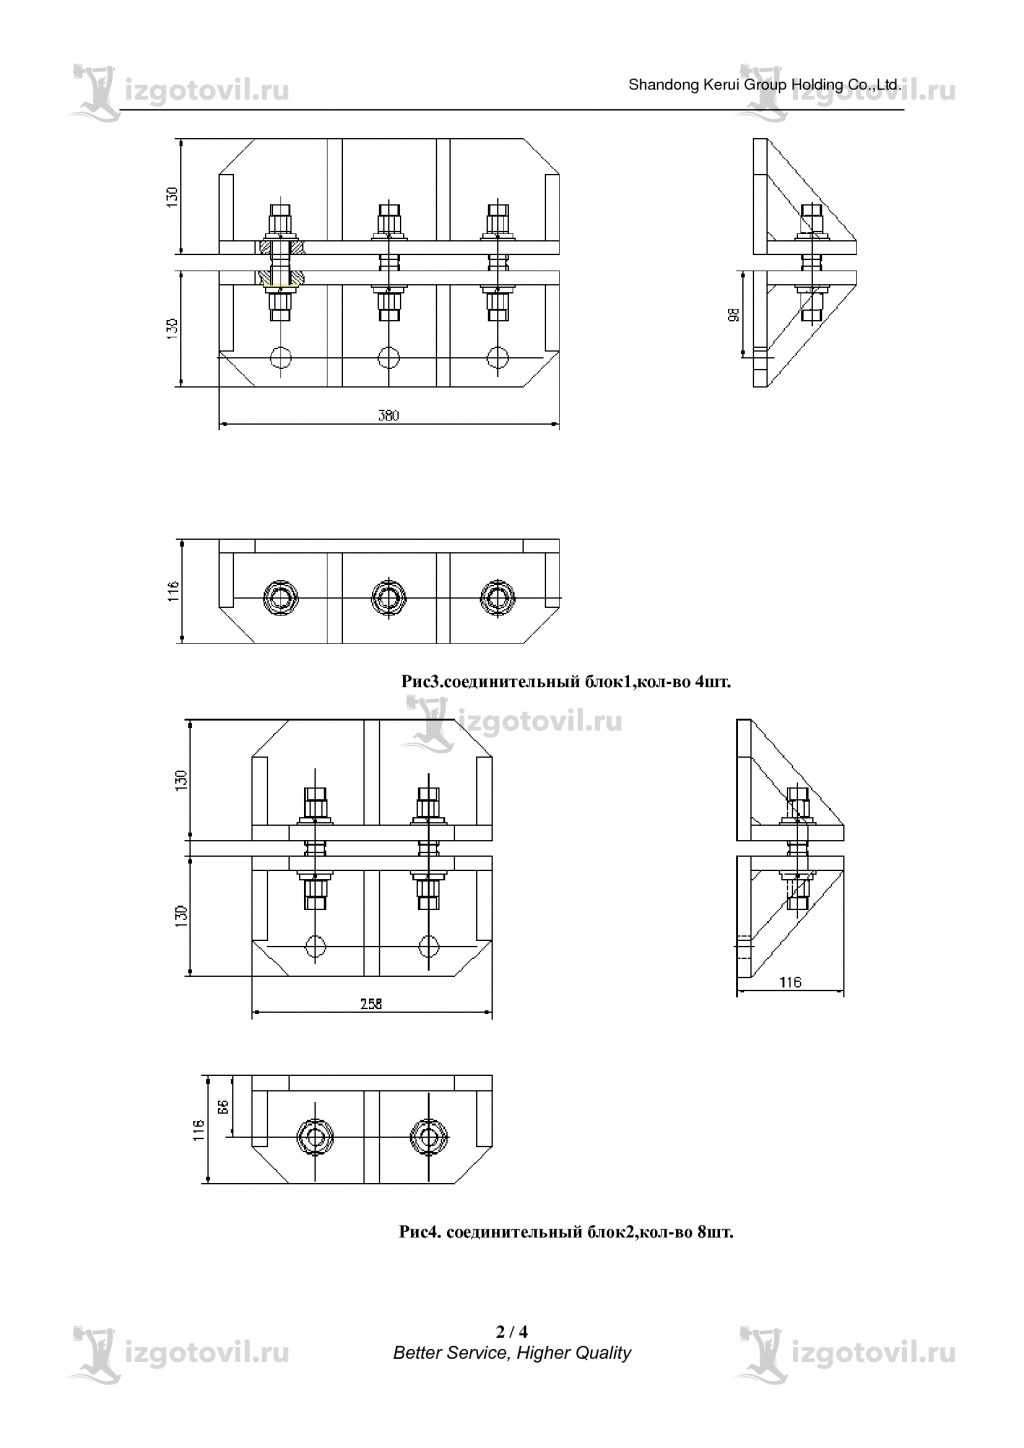 Изготовление металлоконструкций (изготовления креплений контейнера)